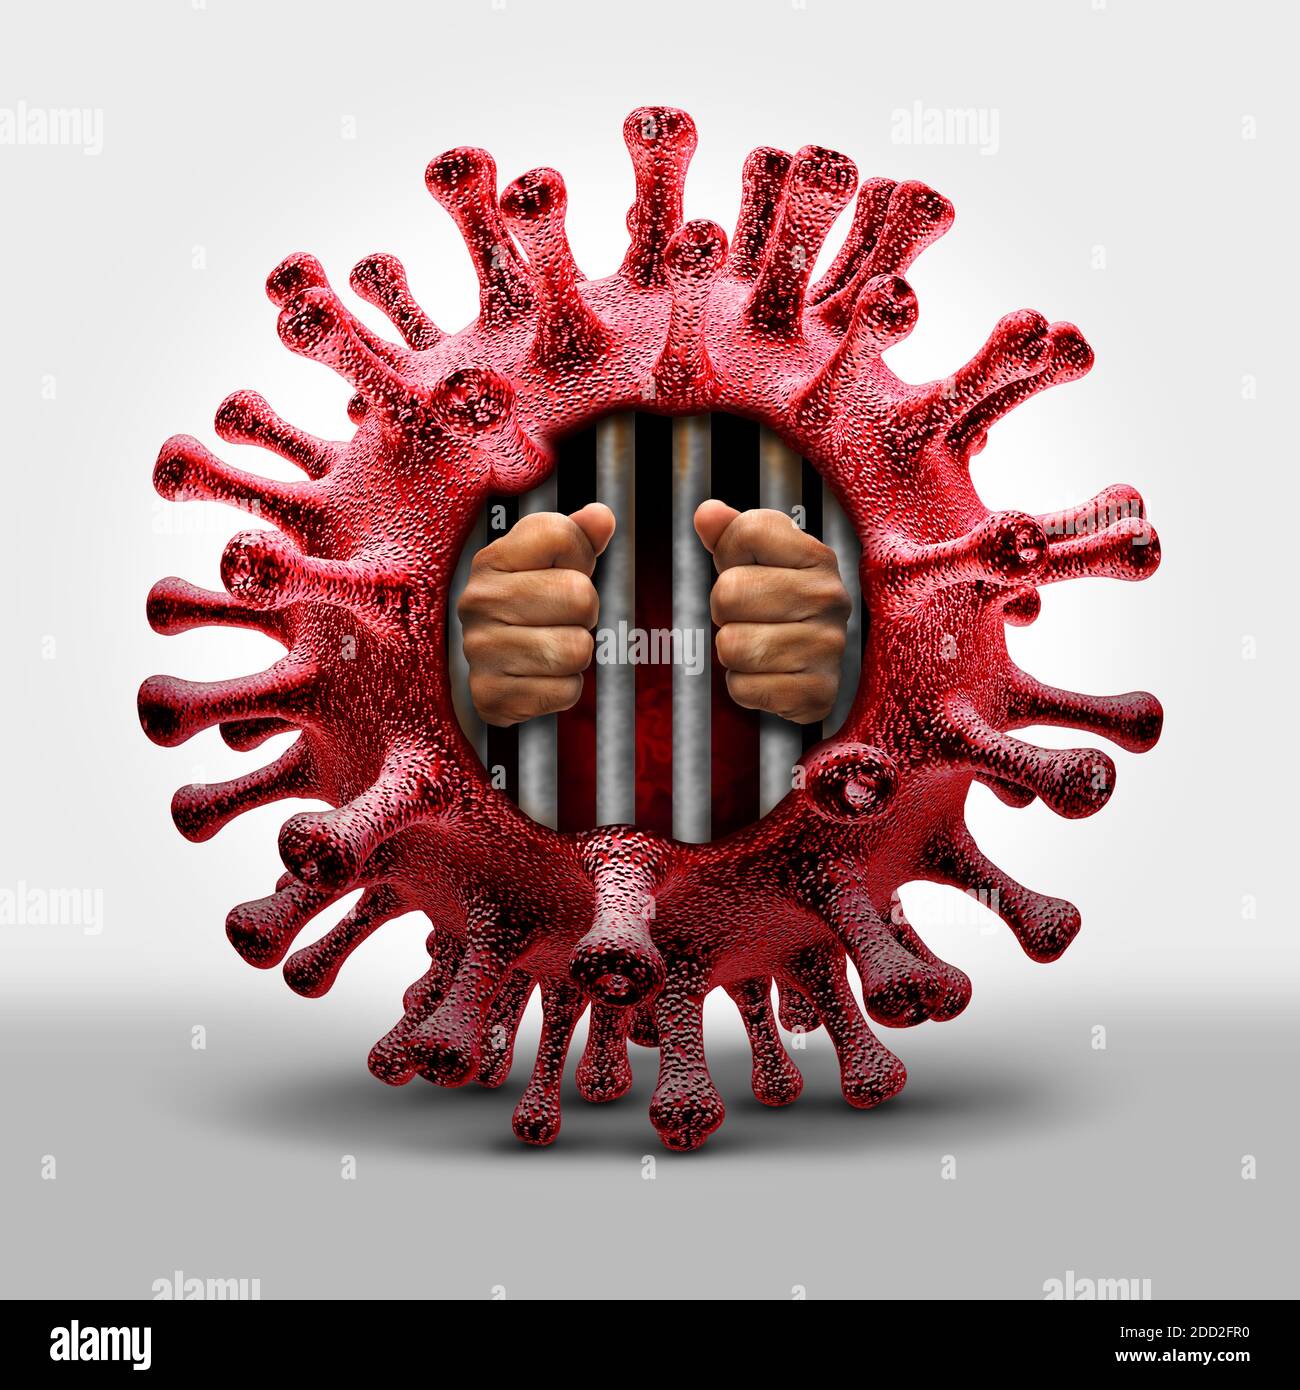 Confinement de la prison du virus et coronavirus ou covid-19 risque pour la santé maladie et éclosion de grippe ou grippe comme cas dangereux de souche virale comme une pandémie. Banque D'Images